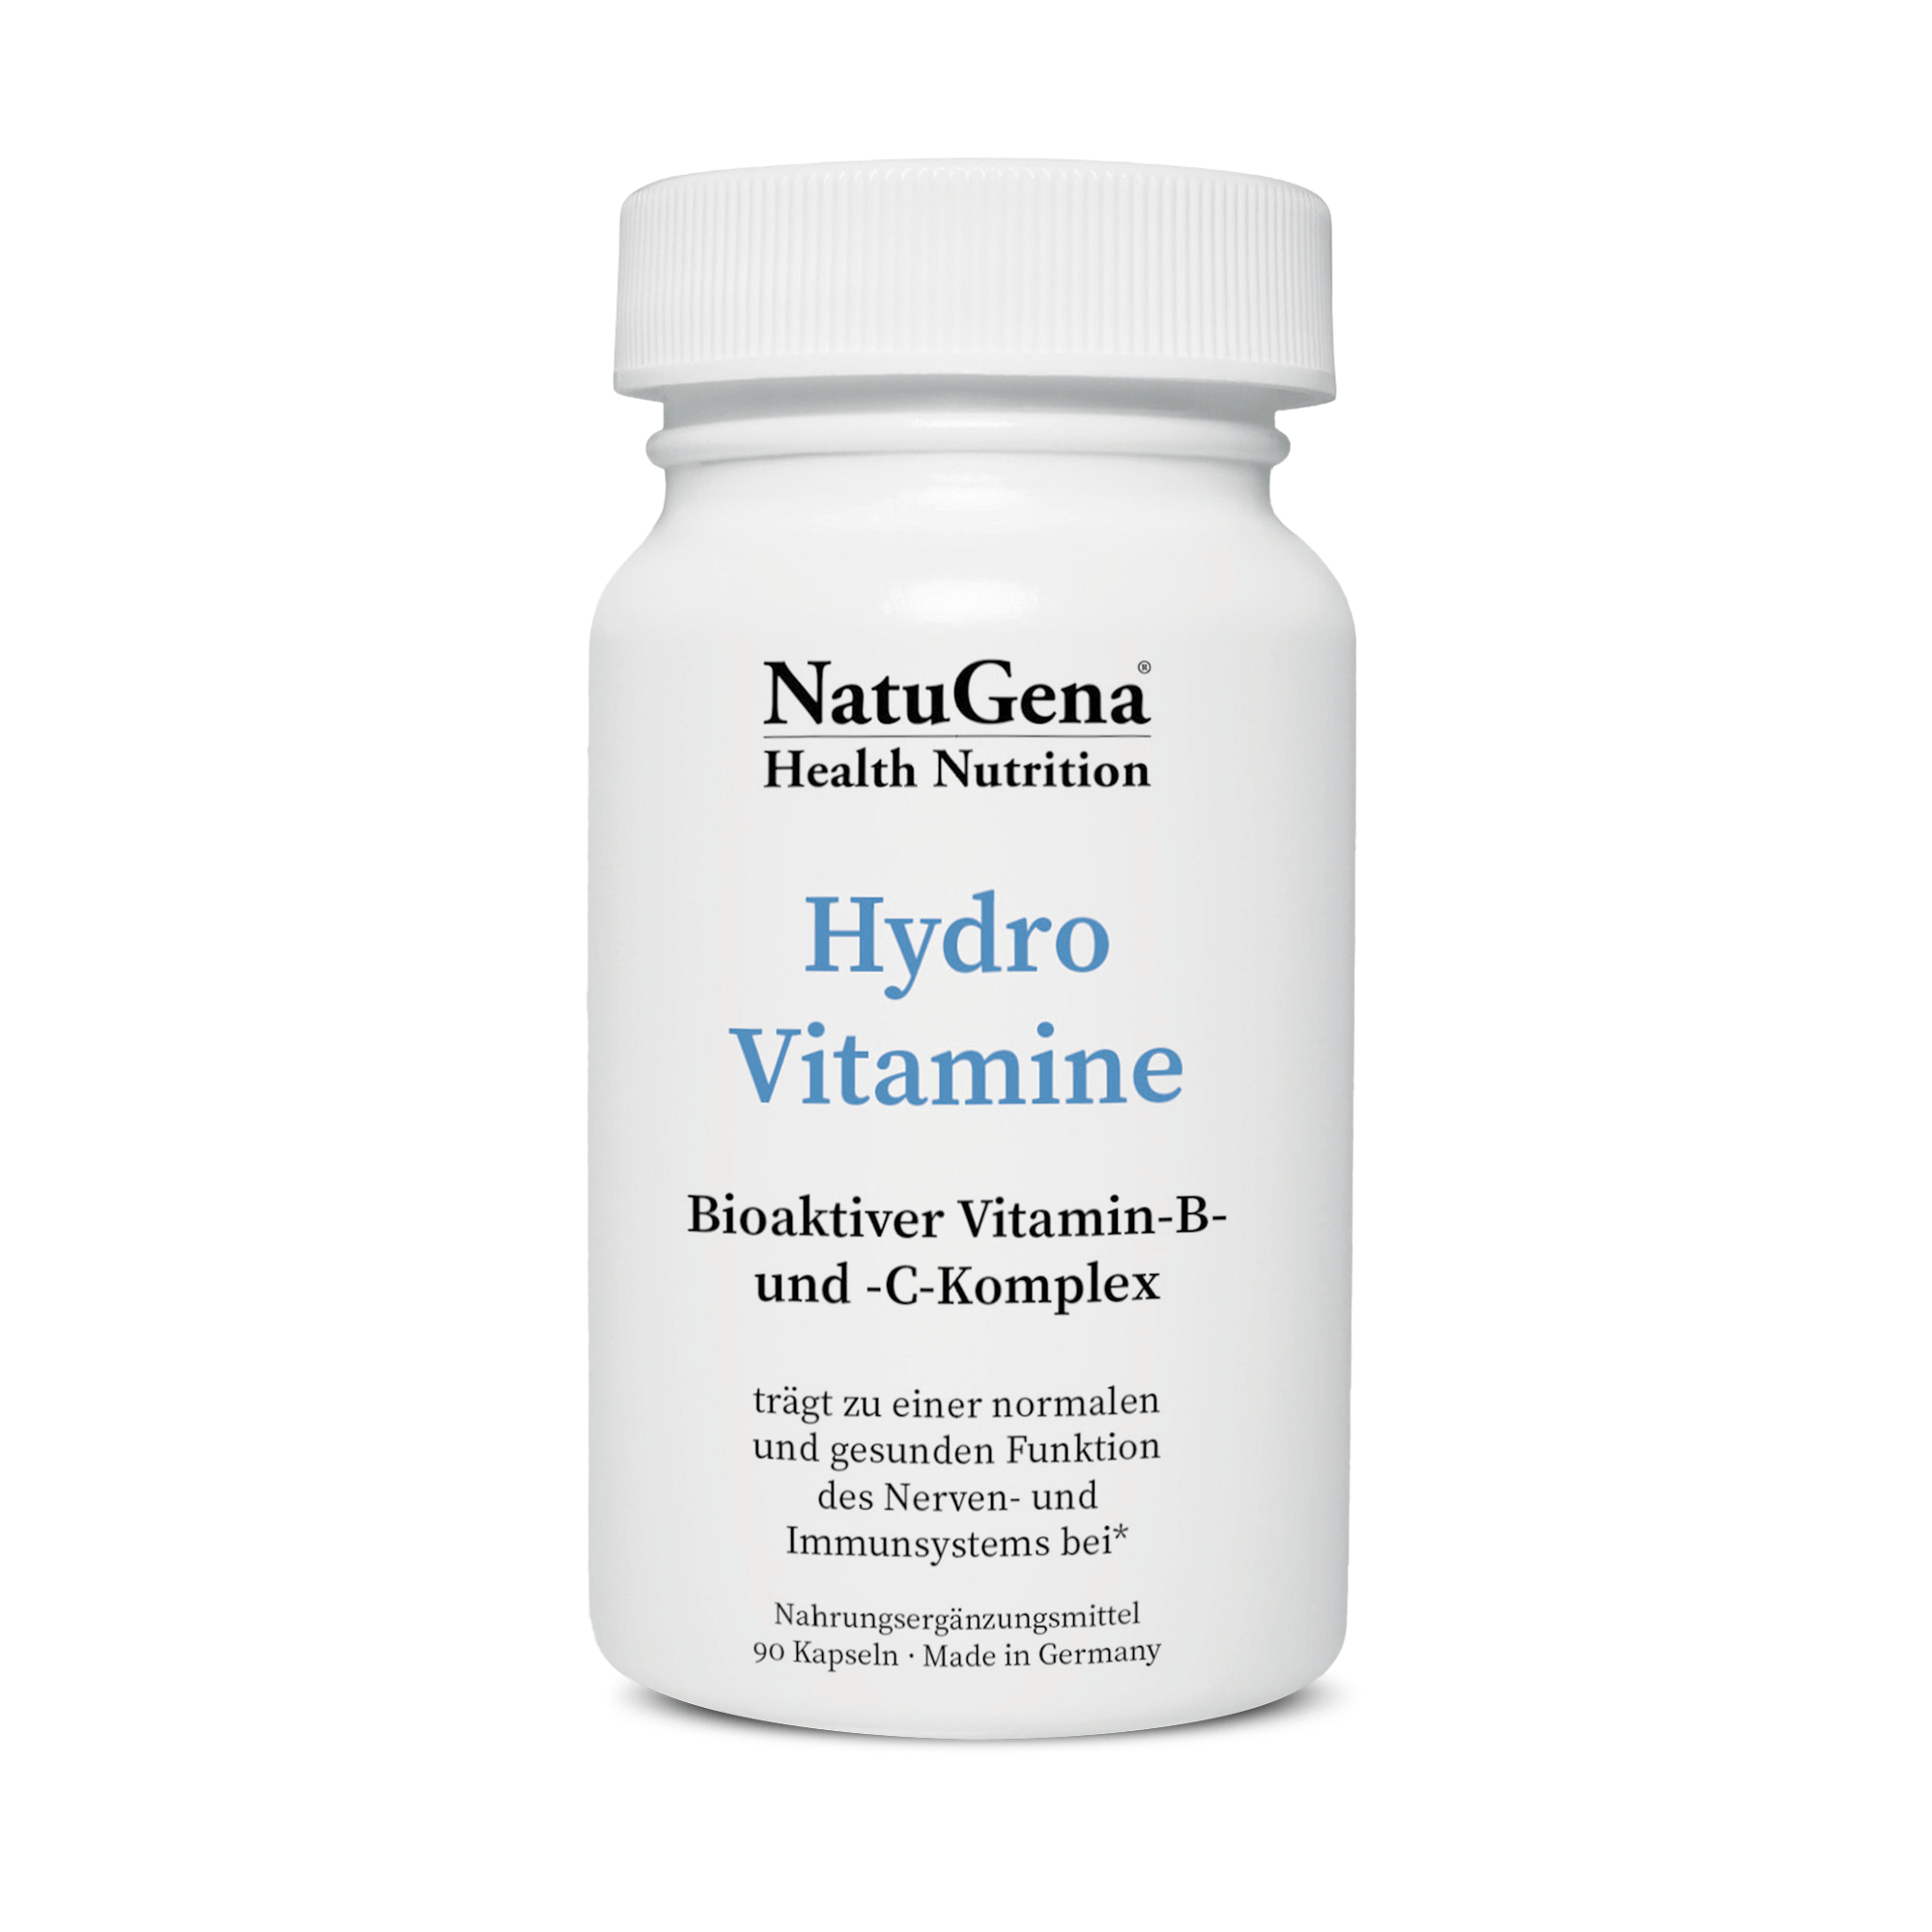 NatuGena HydroVitamine | 90 Kapseln - Unterstützt Immunsystem und Stoffwechsel mit bioaktiven Vitaminen